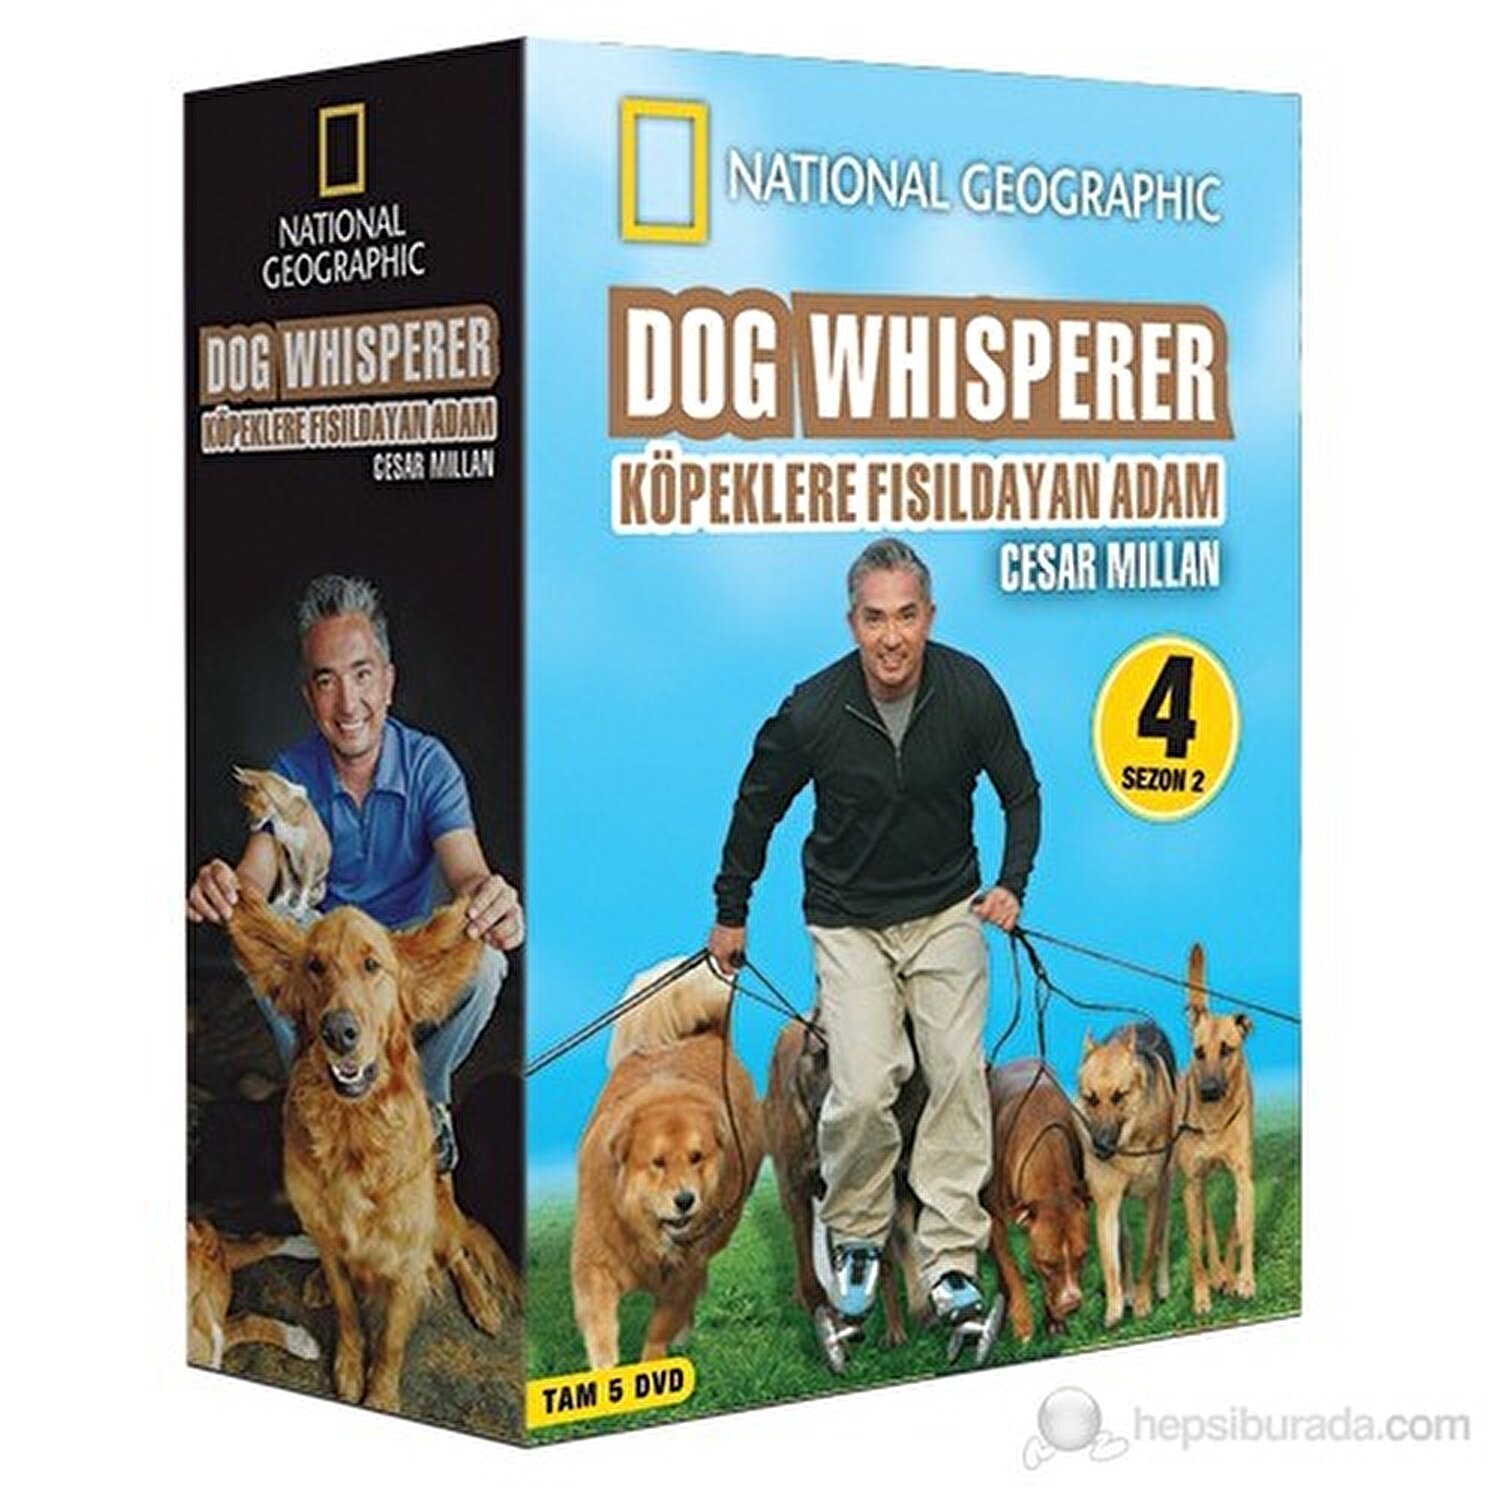 Dog Whisperer Kopeklere Fisildayan Adam Sezon 2 Bolum 4 Fiyati